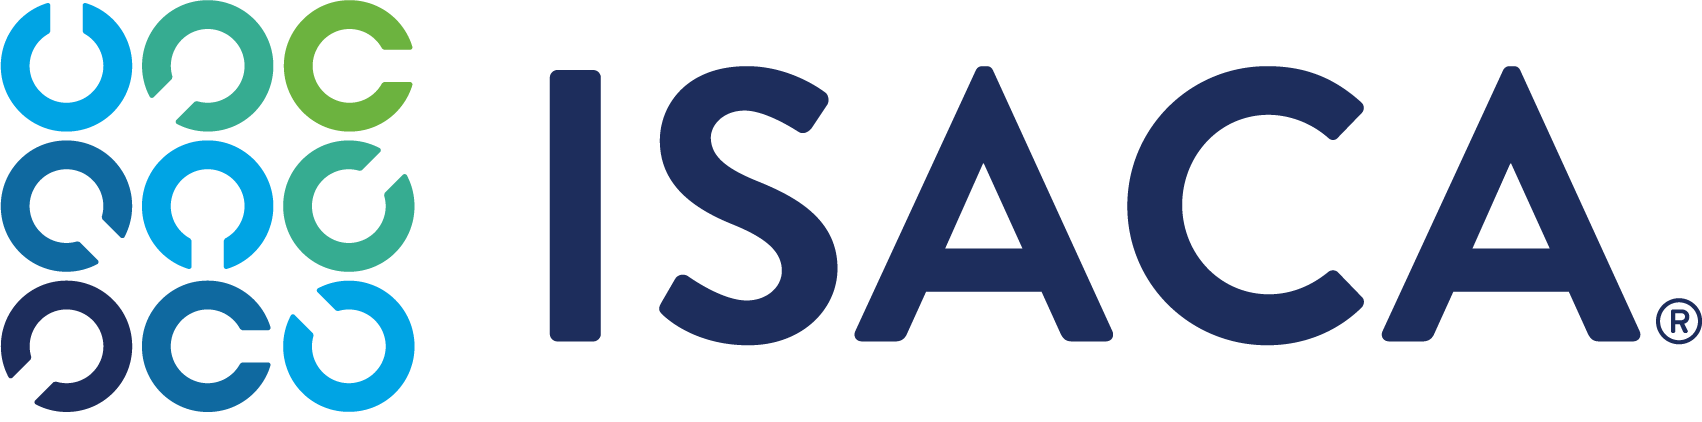 ISACA_logo_